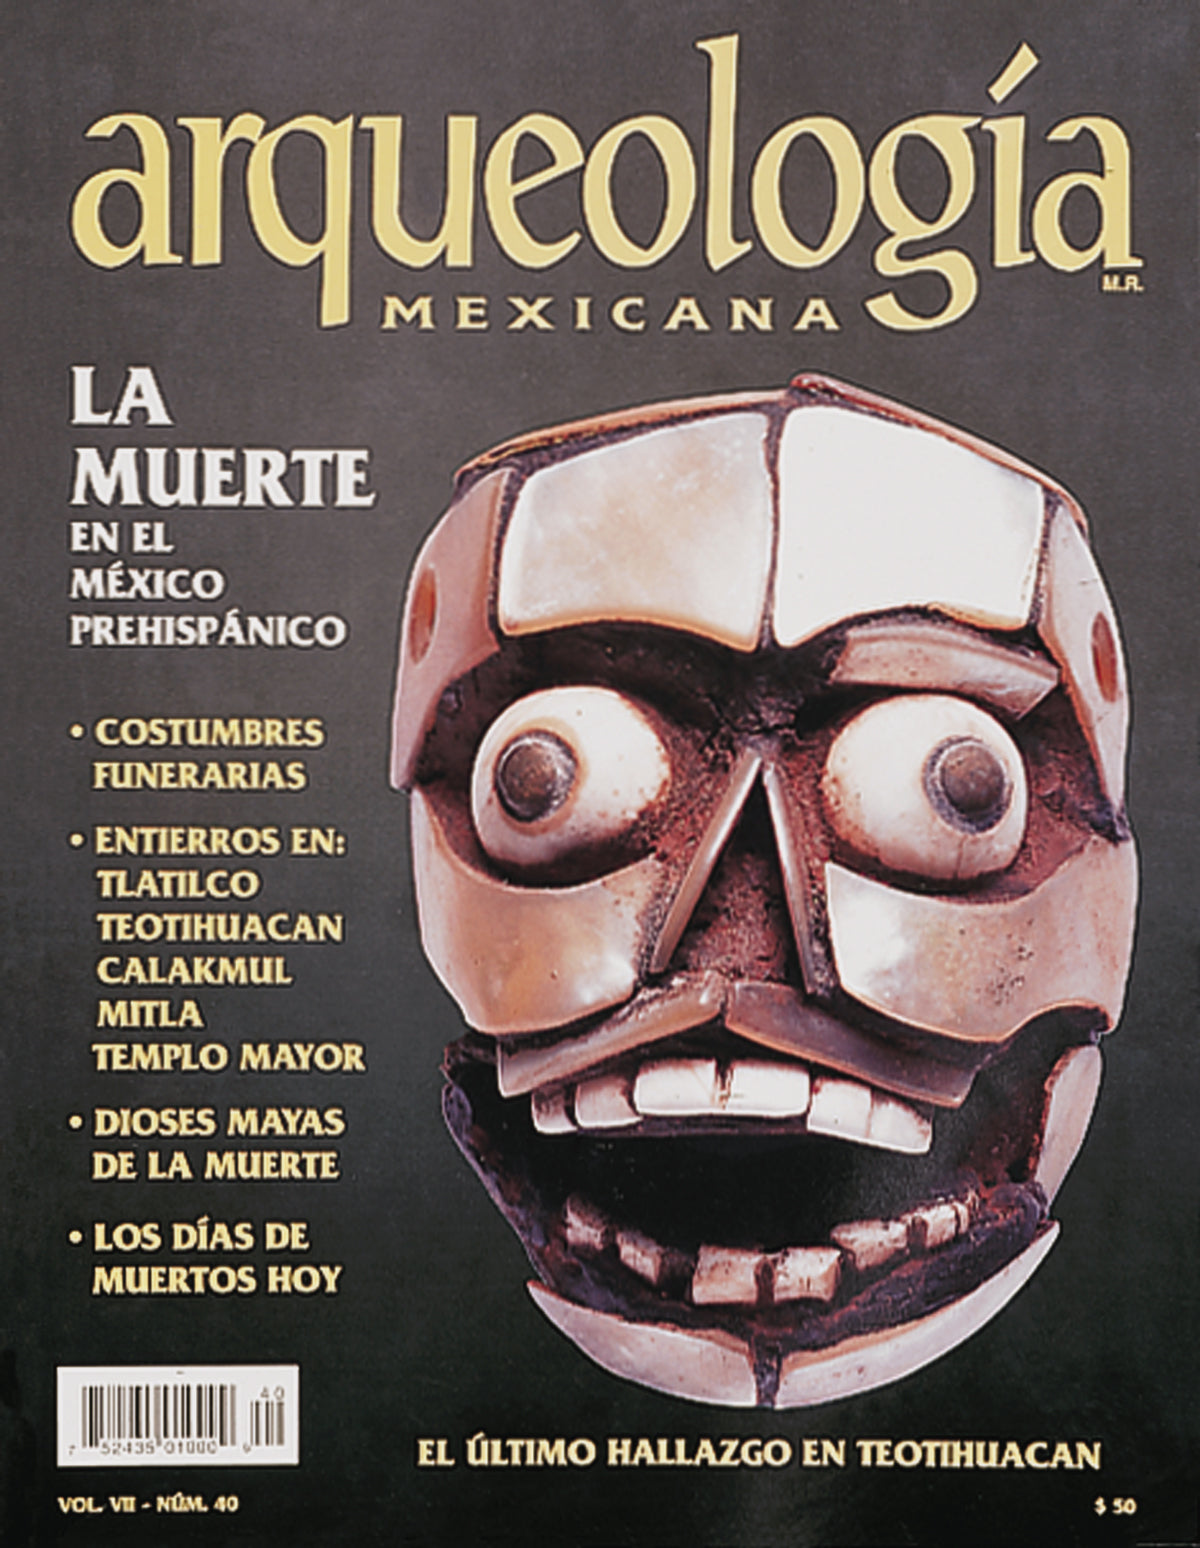 La muerte en el México prehispánico